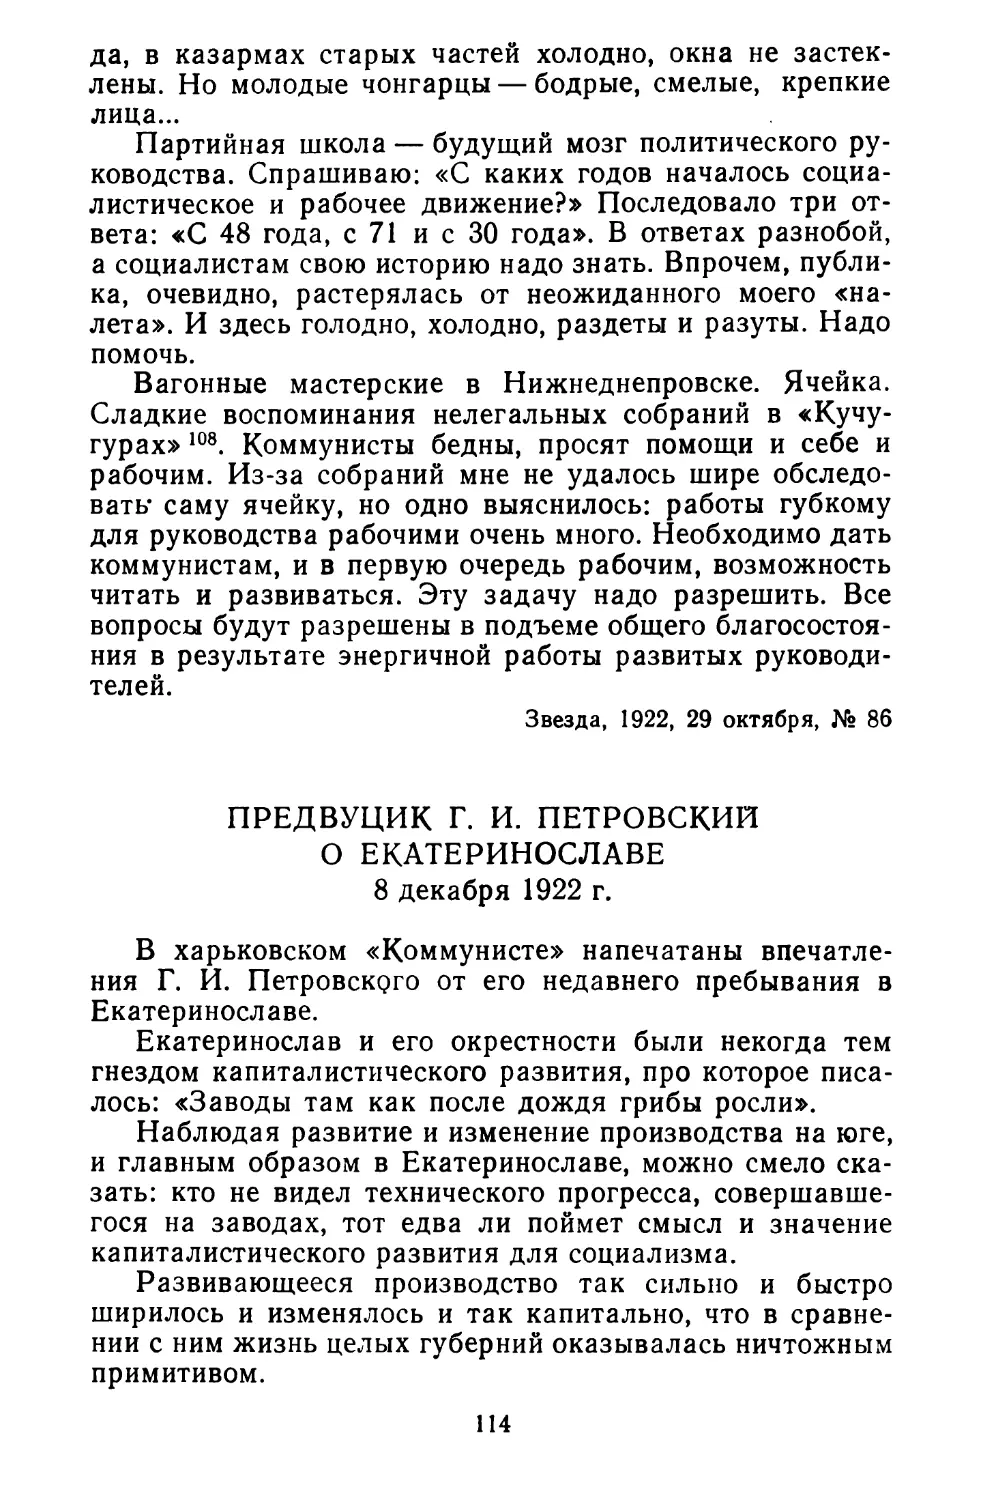 ПредВУЦИК Г. И. Петровский о Екатеринославе. 8 декабря 1922 г.